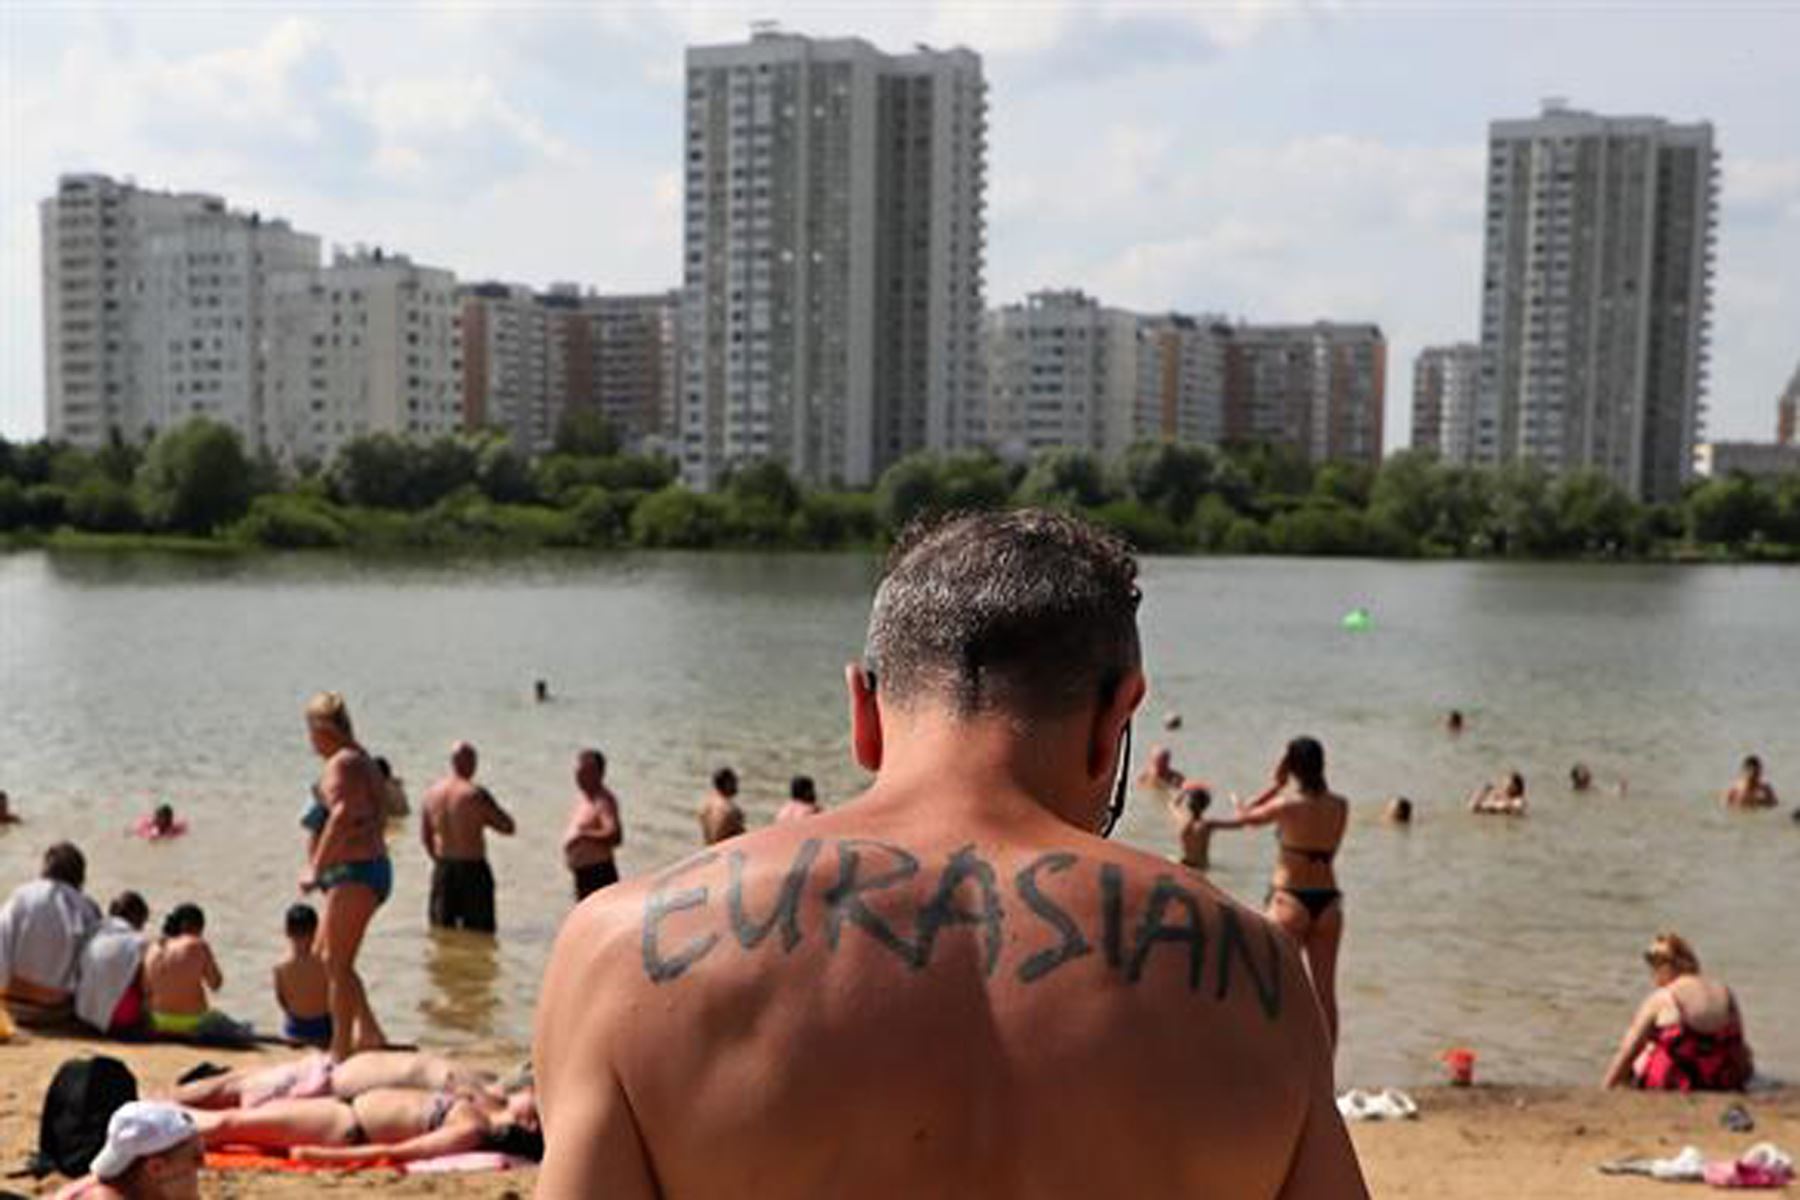 La gente disfruta de un día caluroso en un estanque en un distrito residencial de Moscú, Rusia. La temperatura en Moscú superó los 31 grados Celsius. 
Foto: EFE